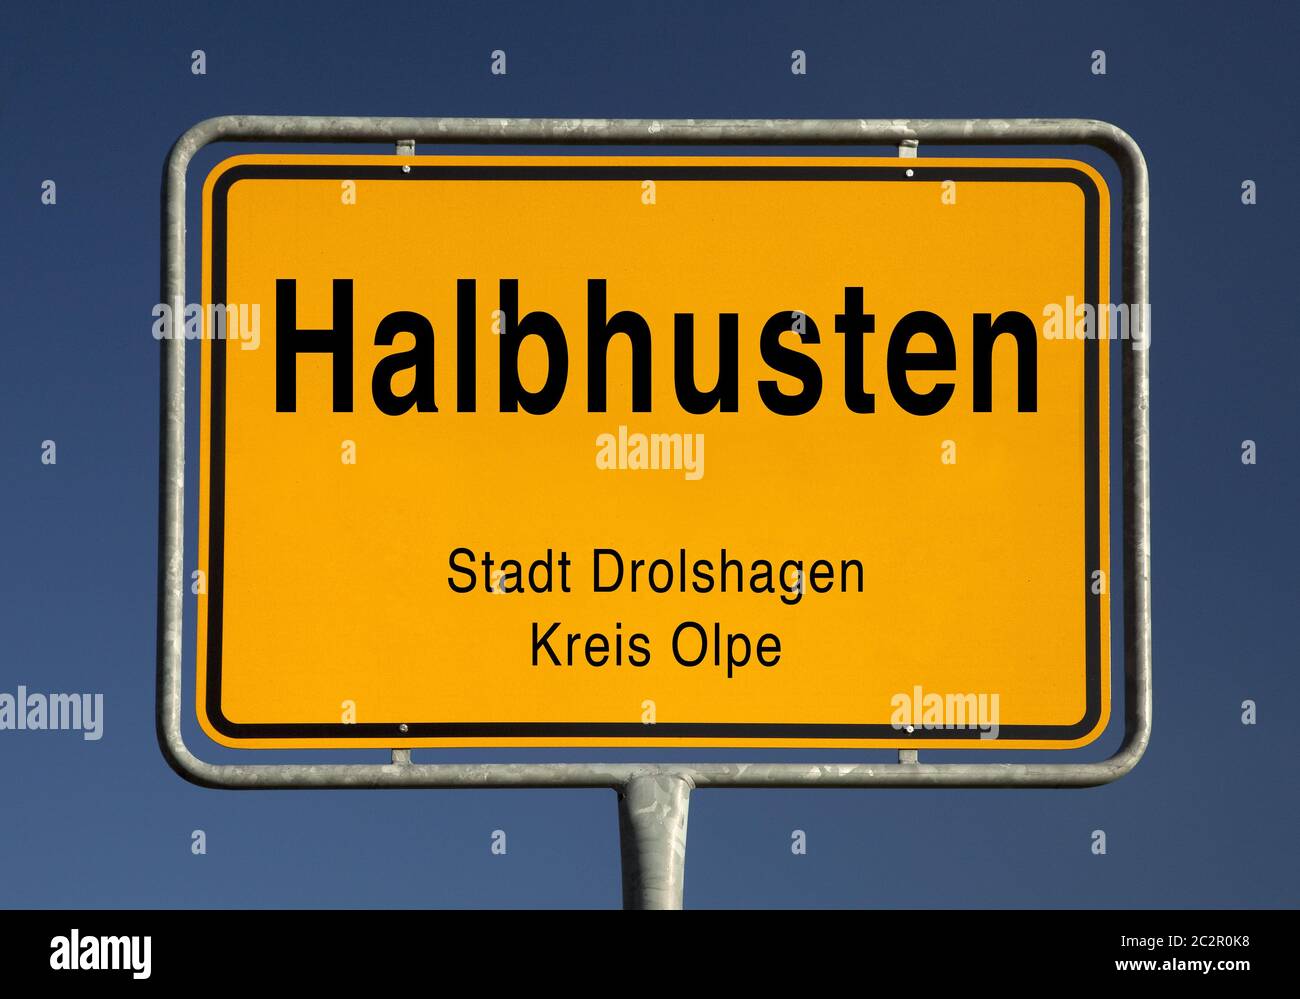 Señal de entrada de la ciudad de Halbhusten, Drolshagen, Kreis Olpe, Renania del Norte-Westfalia, Alemania, Europa Foto de stock